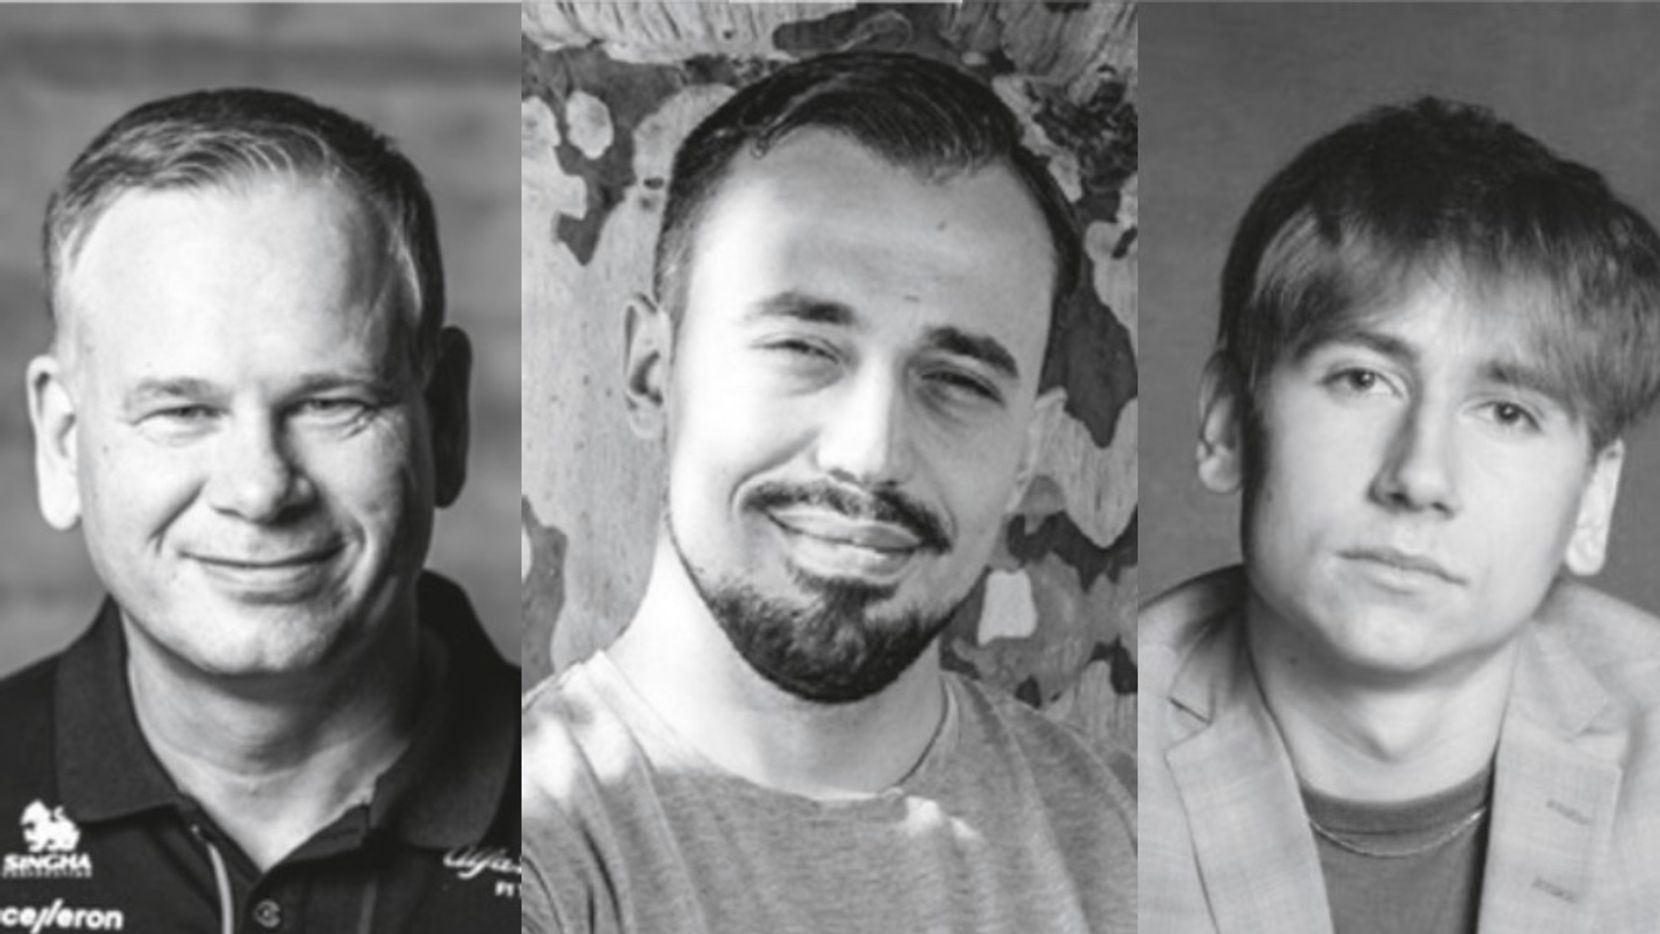 Collage der Porträtfotos von Axel Kruse, Zeki Bulgurcu und Timon Sommer.